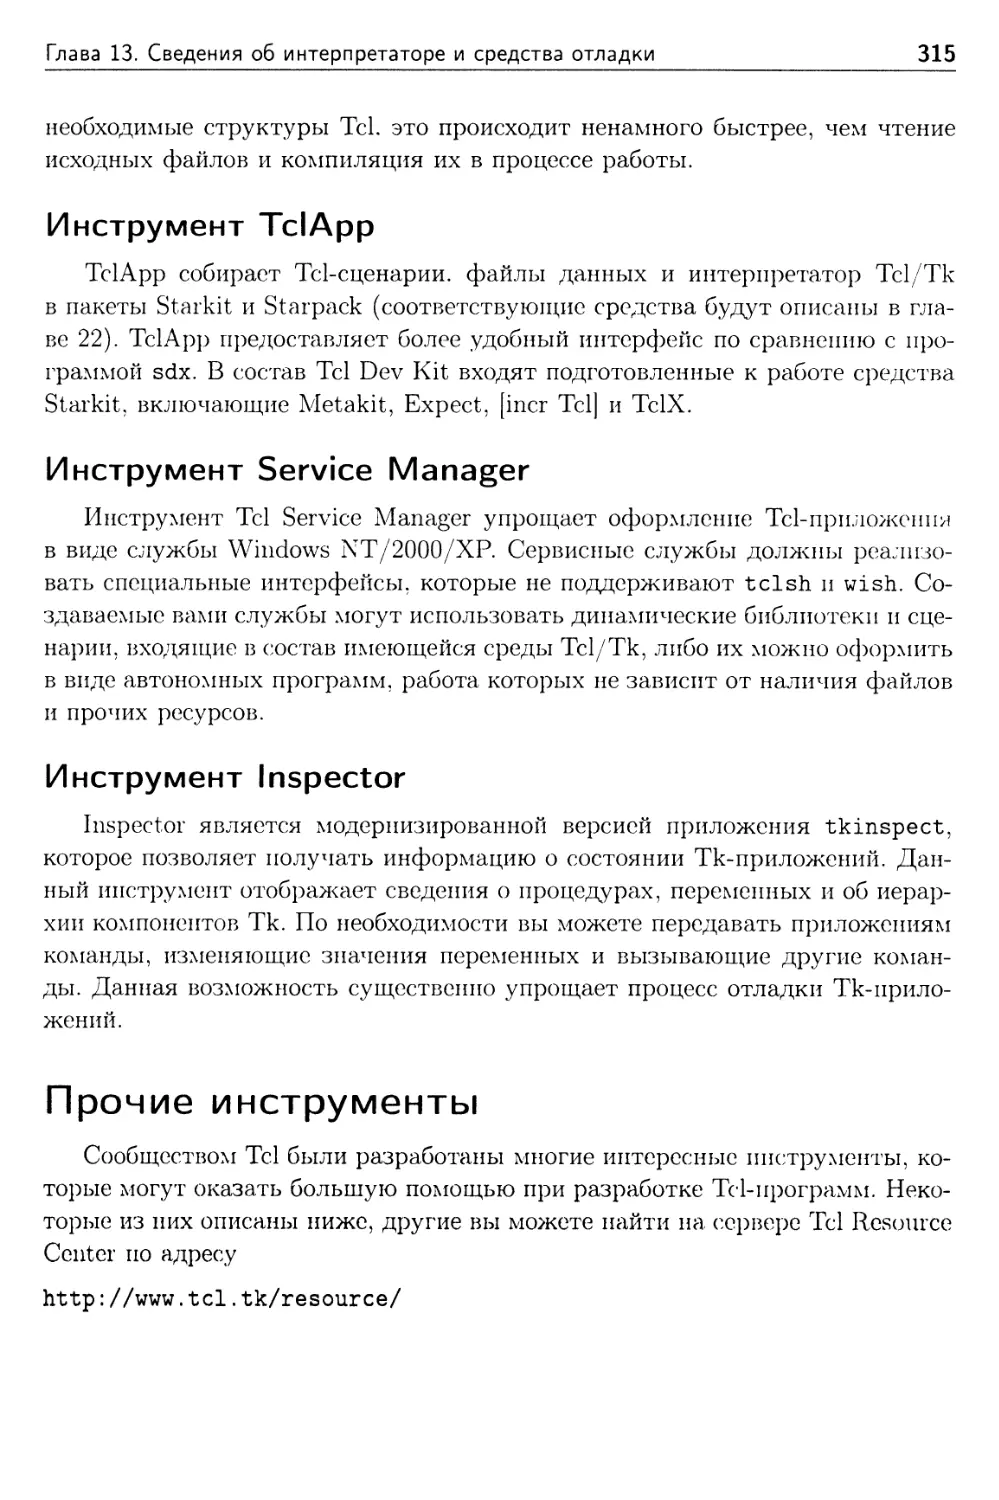 Инструмент TclApp
Инструмент Service Manager
Инструмент Inspector
Прочие инструменты